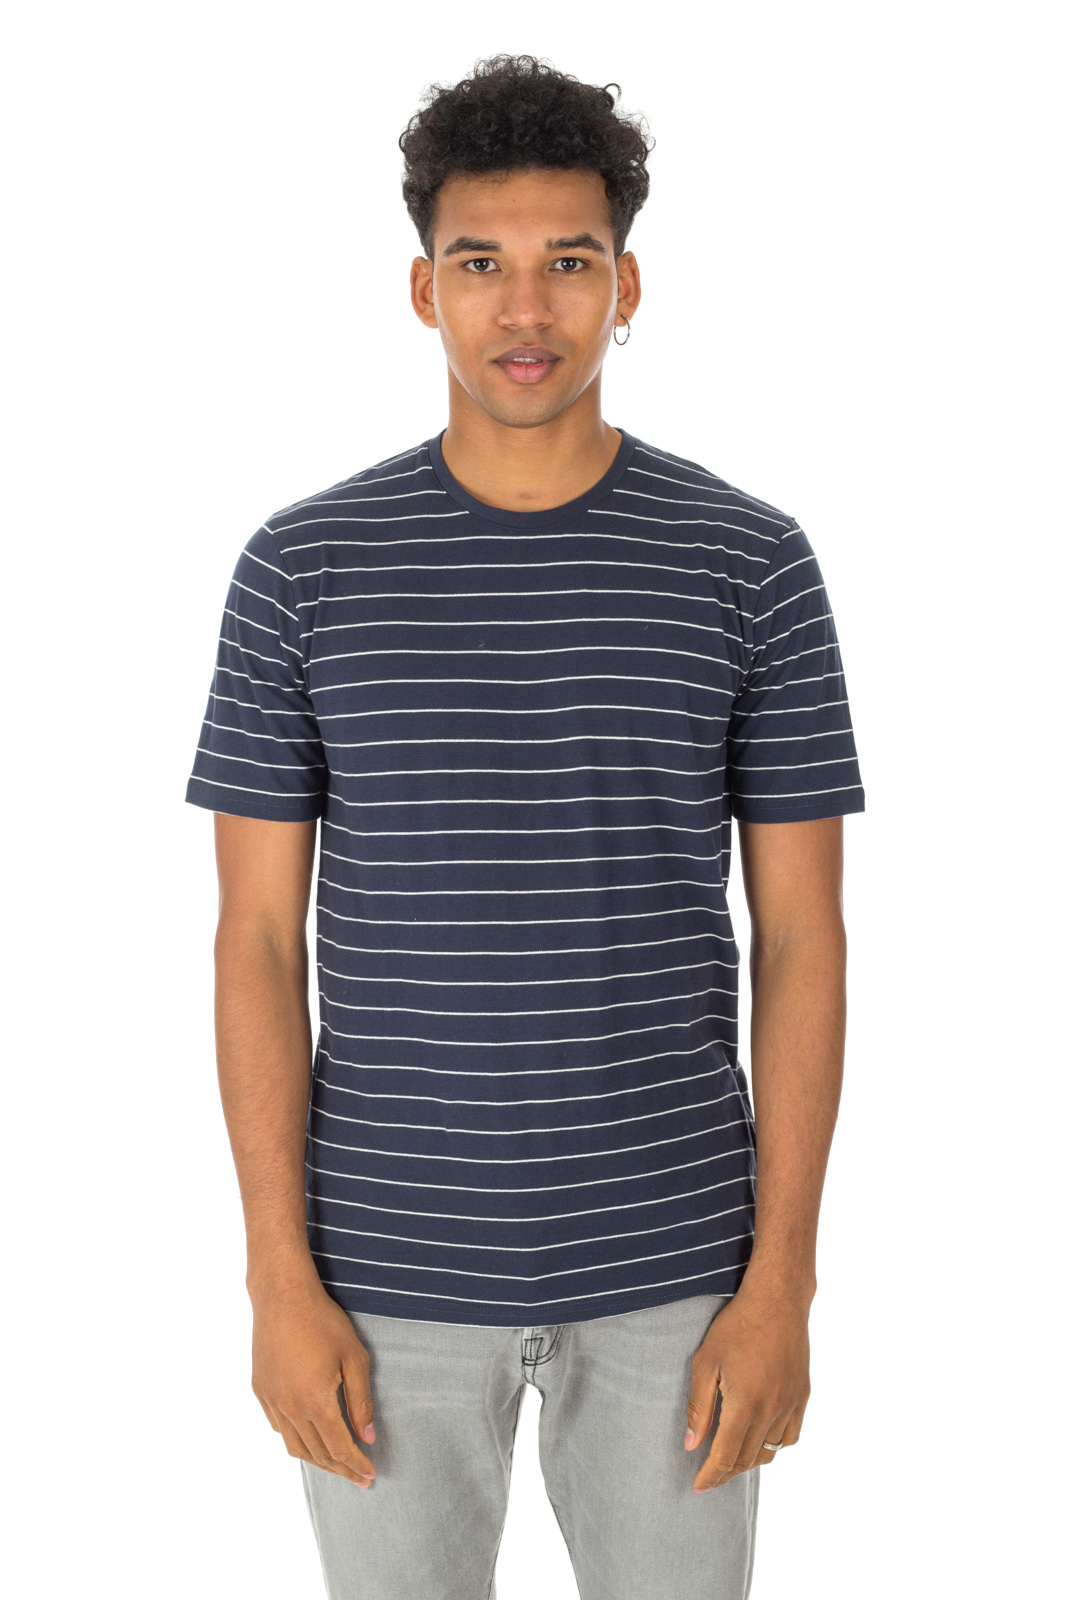 Minimum - T shirt Tatipu a righe blu/bianca